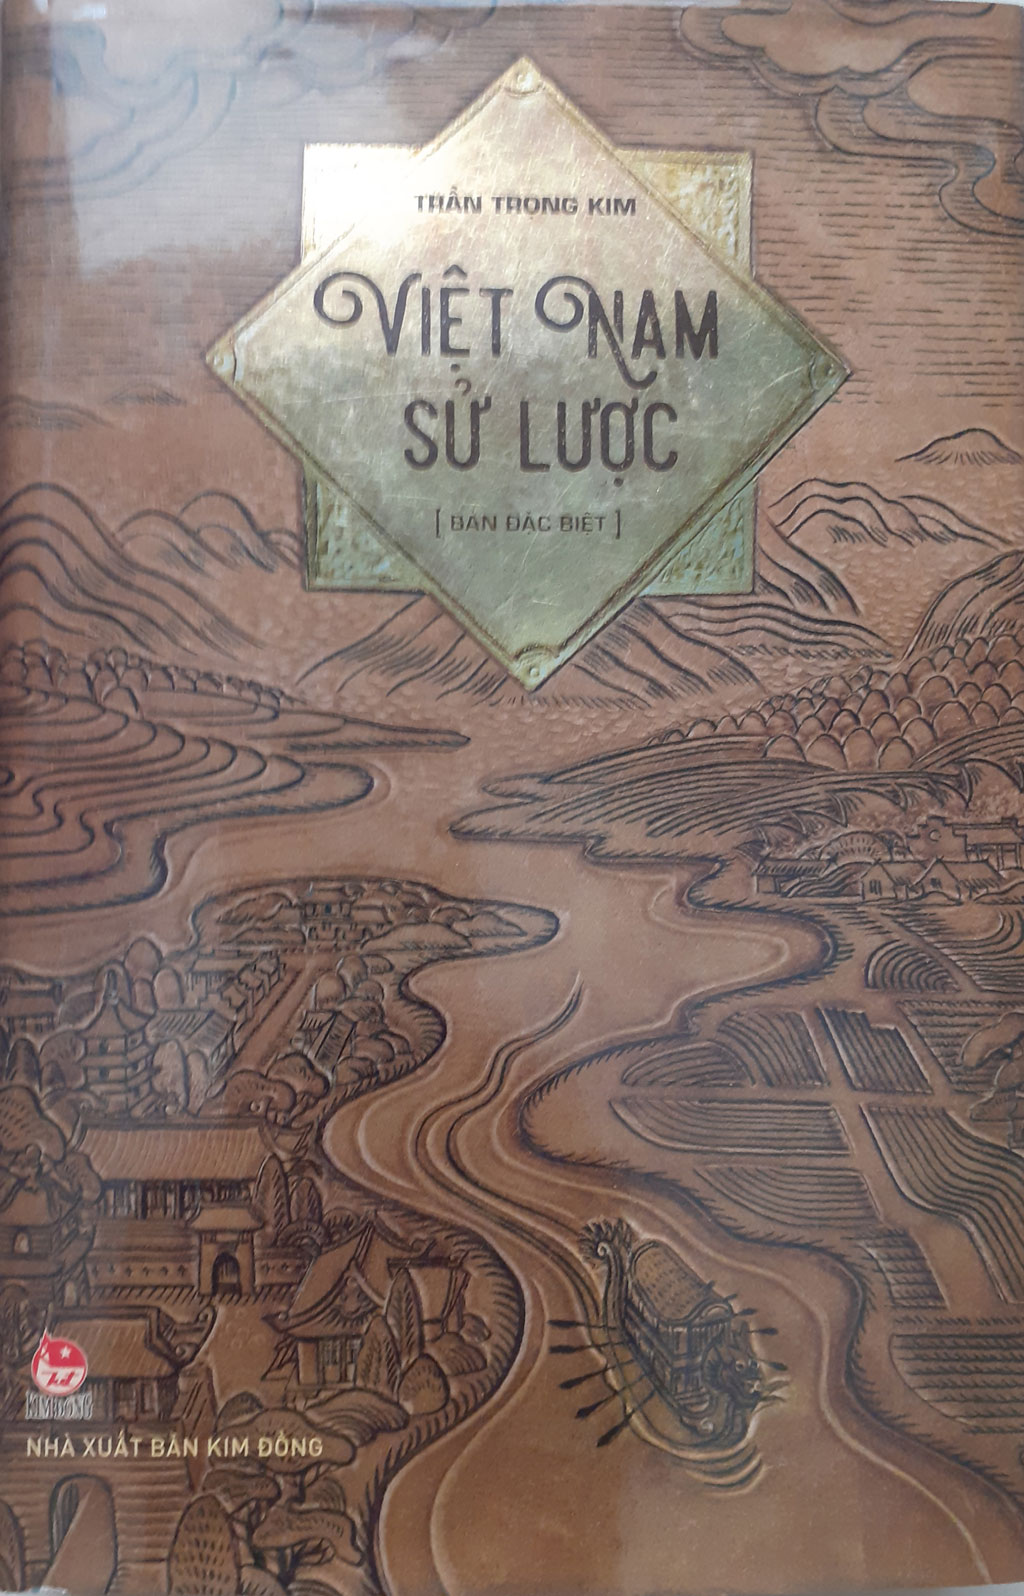 Năm thế kỷ đề tên Qui Nhơn trong nguyên bản Việt Nam sử lược1